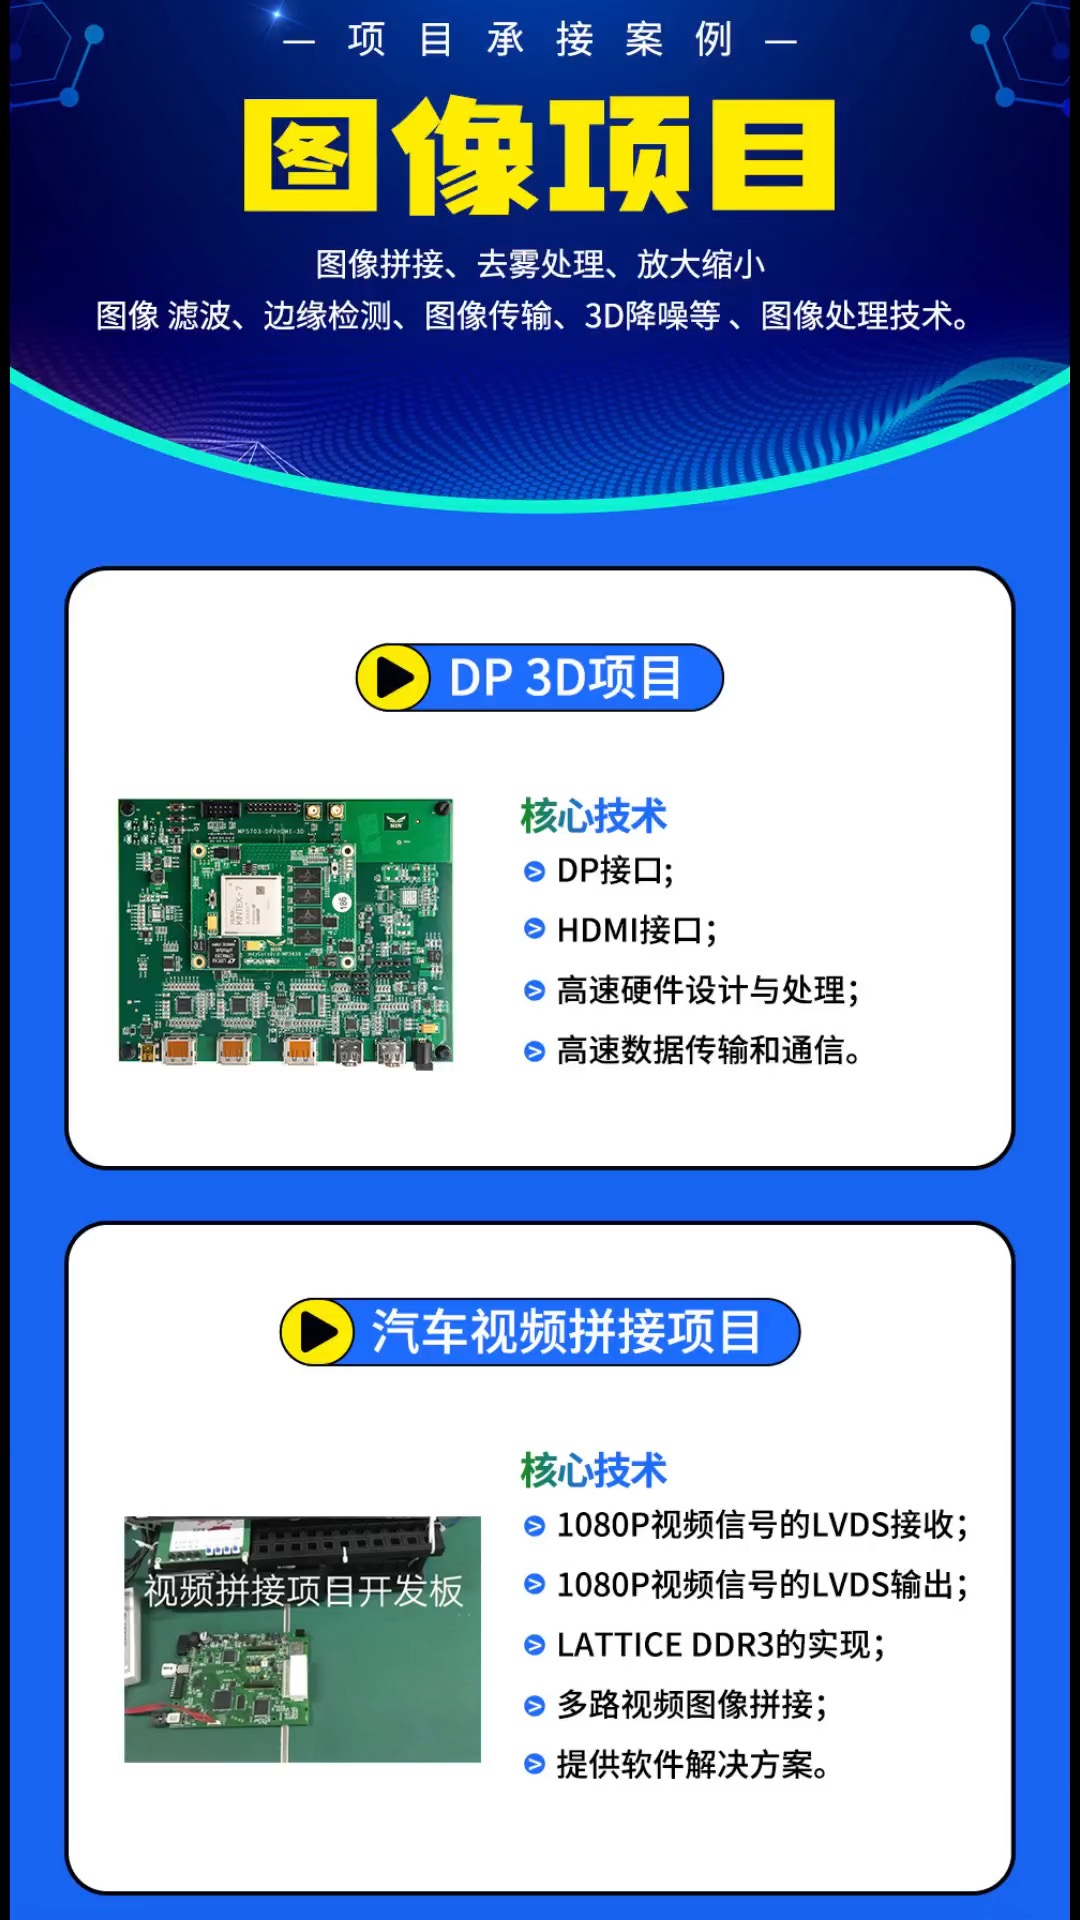 FPGA项目案例：图像处理。
图像拼接、去雾处理、放大缩小、图像滤波、边缘检测、图像传输、3D降噪等图像处理